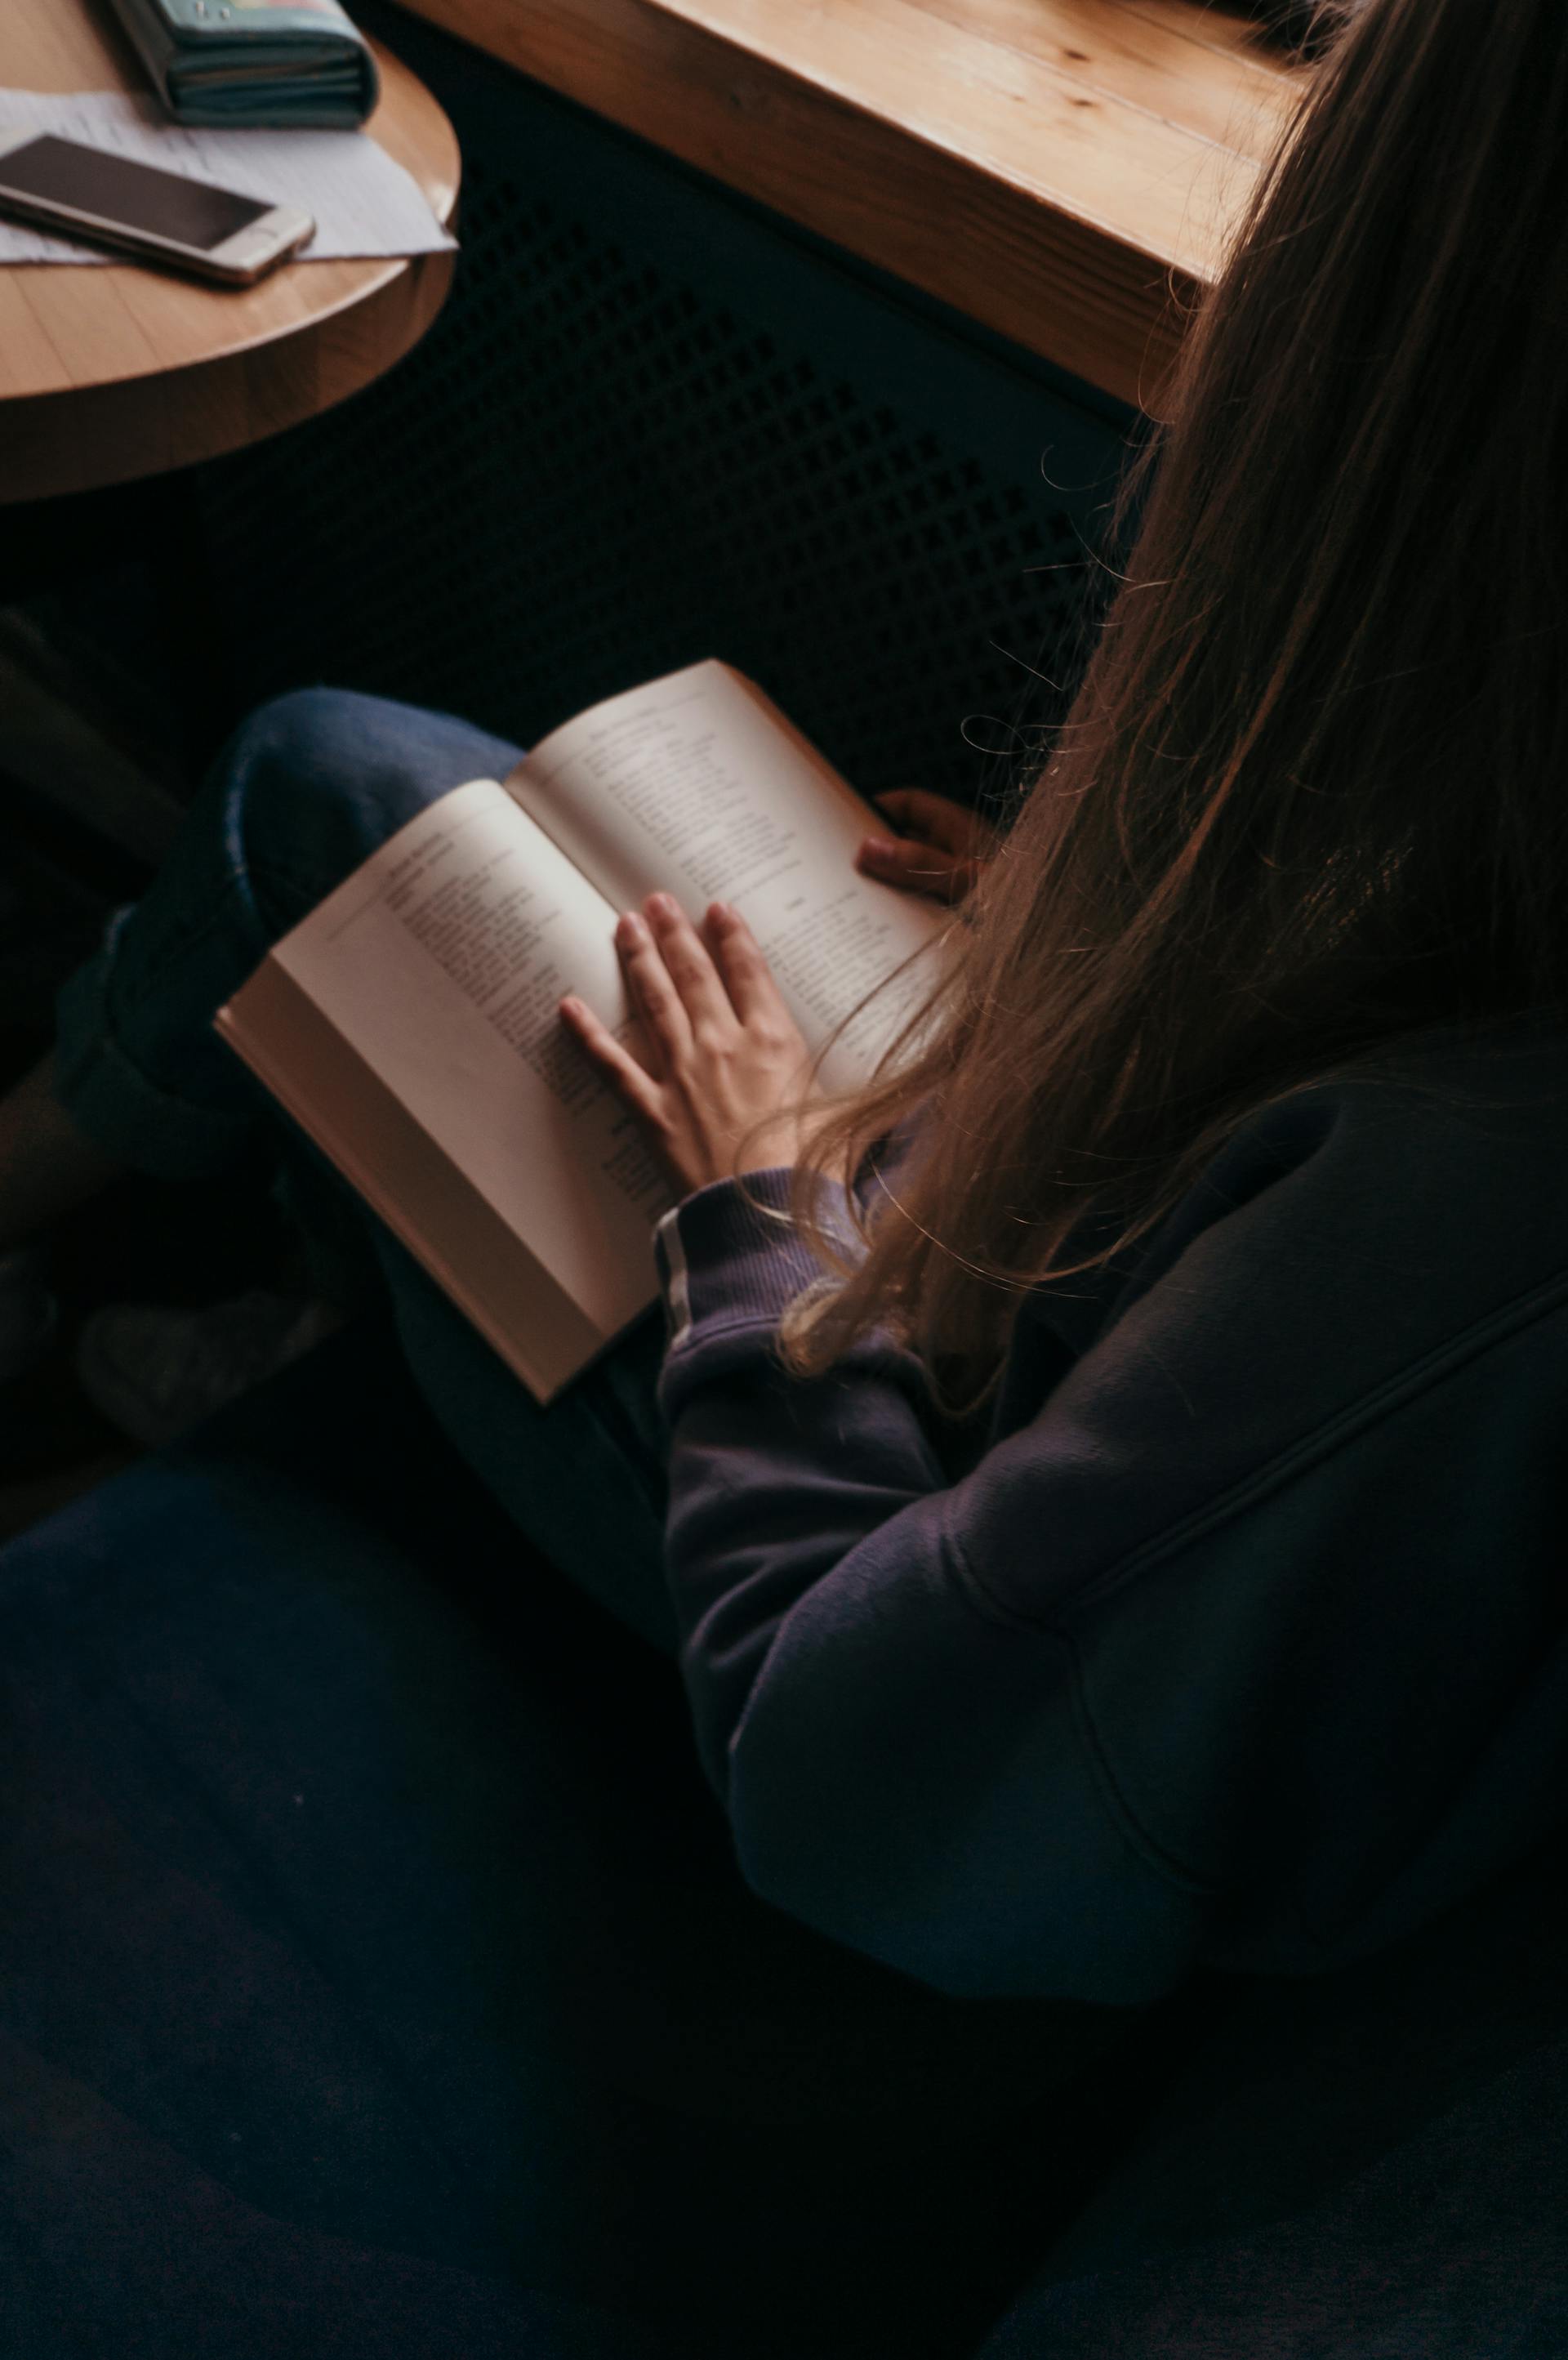 Une personne lisant un livre | Source : Pexels